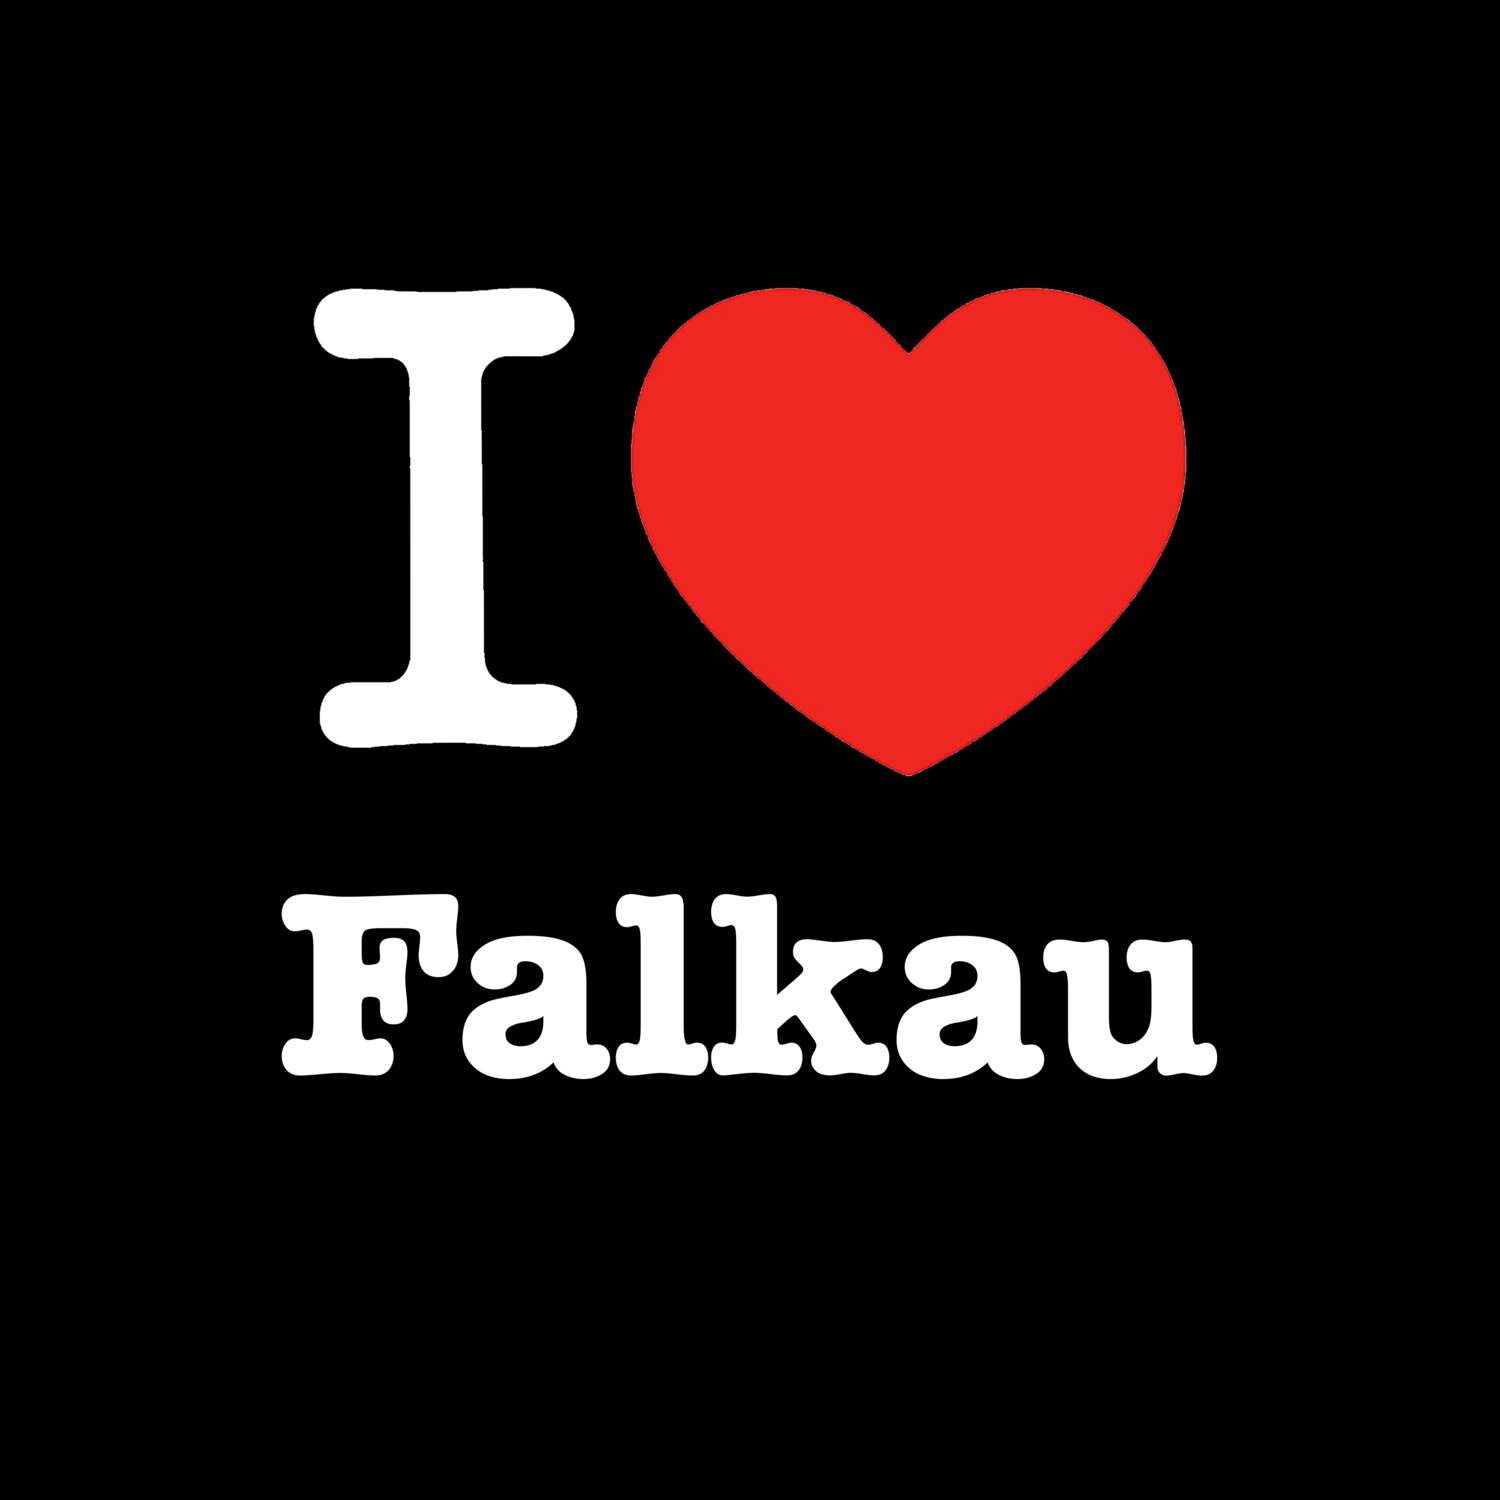 Falkau T-Shirt »I love«